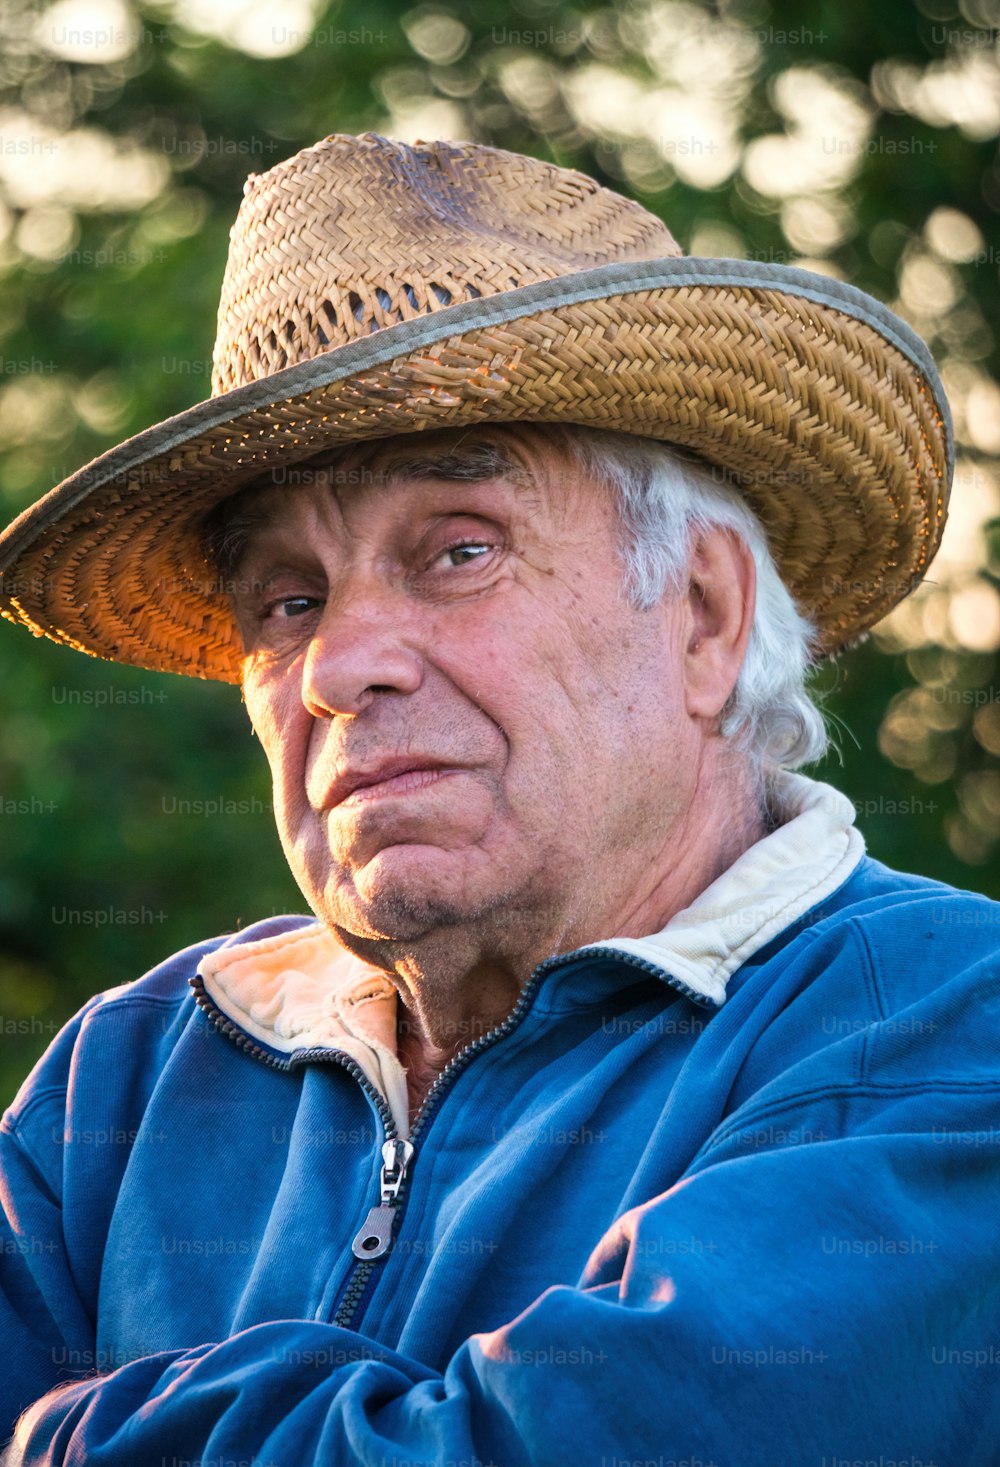 Glückliches Ruhestandsleben. Ein älterer Mann mit Strohhut vor der Kulisse eines sonnigen Abendgartens. Freizeit Gartenarbeit